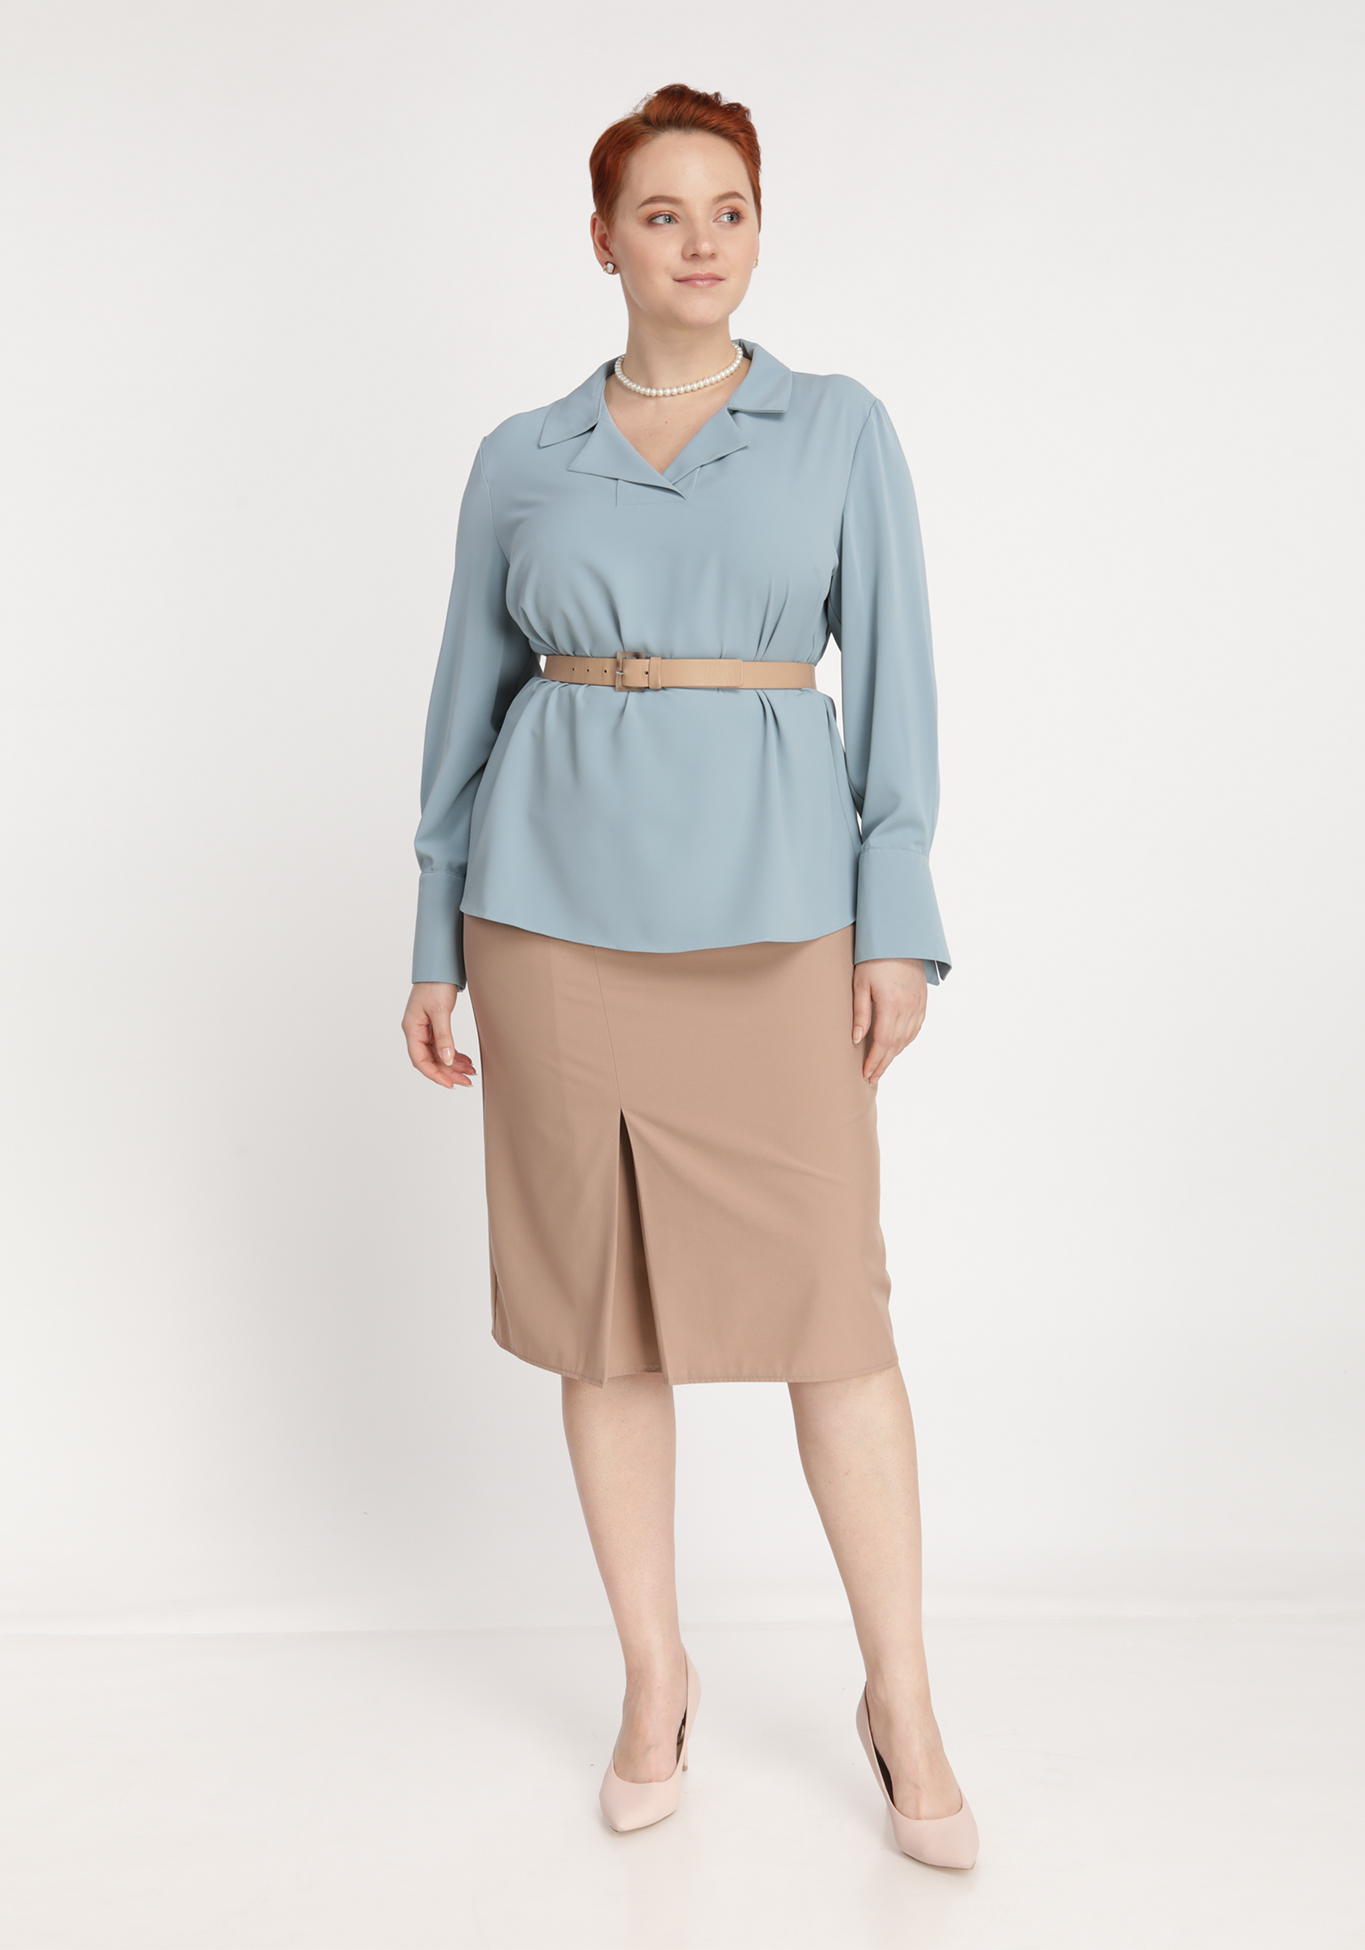 Блуза однотонная с воротником Polina Romanova, размер 48, цвет голубой - фото 2